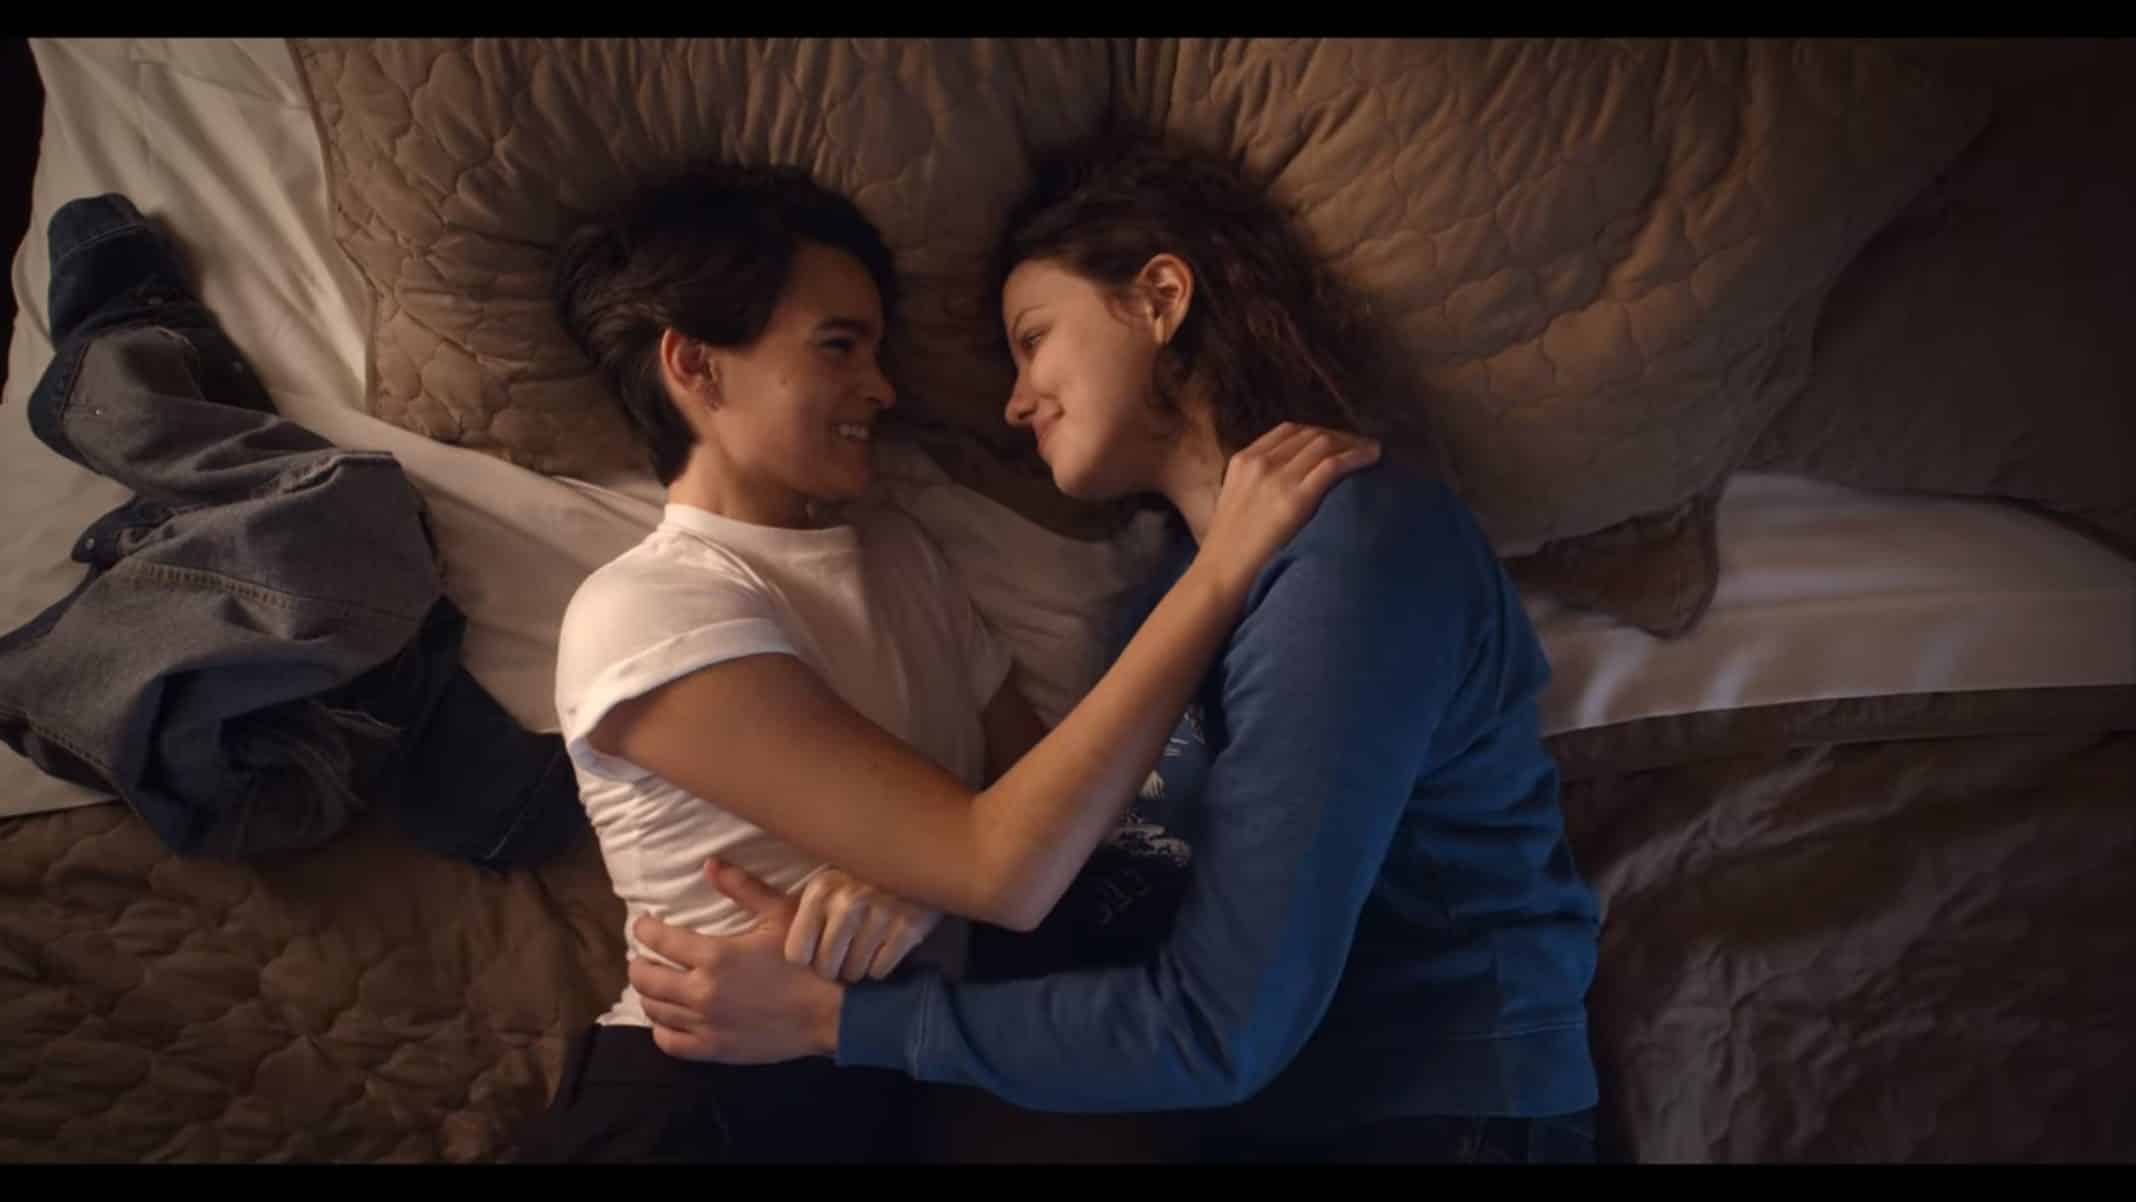 Elodie and Jillian in bed cuddling.